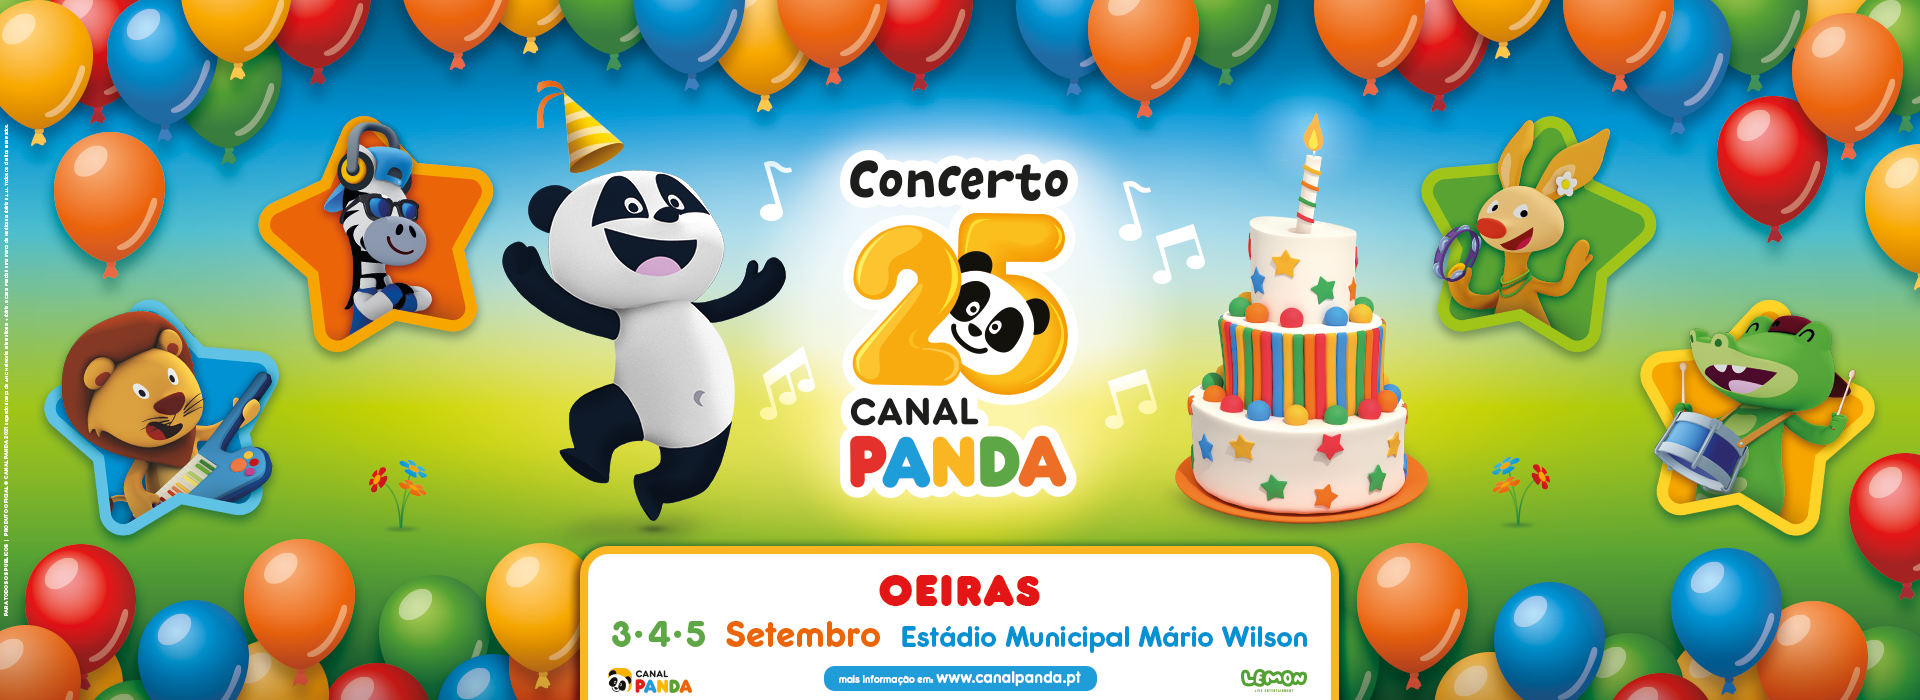 Concerto 25 Anos Canal Panda